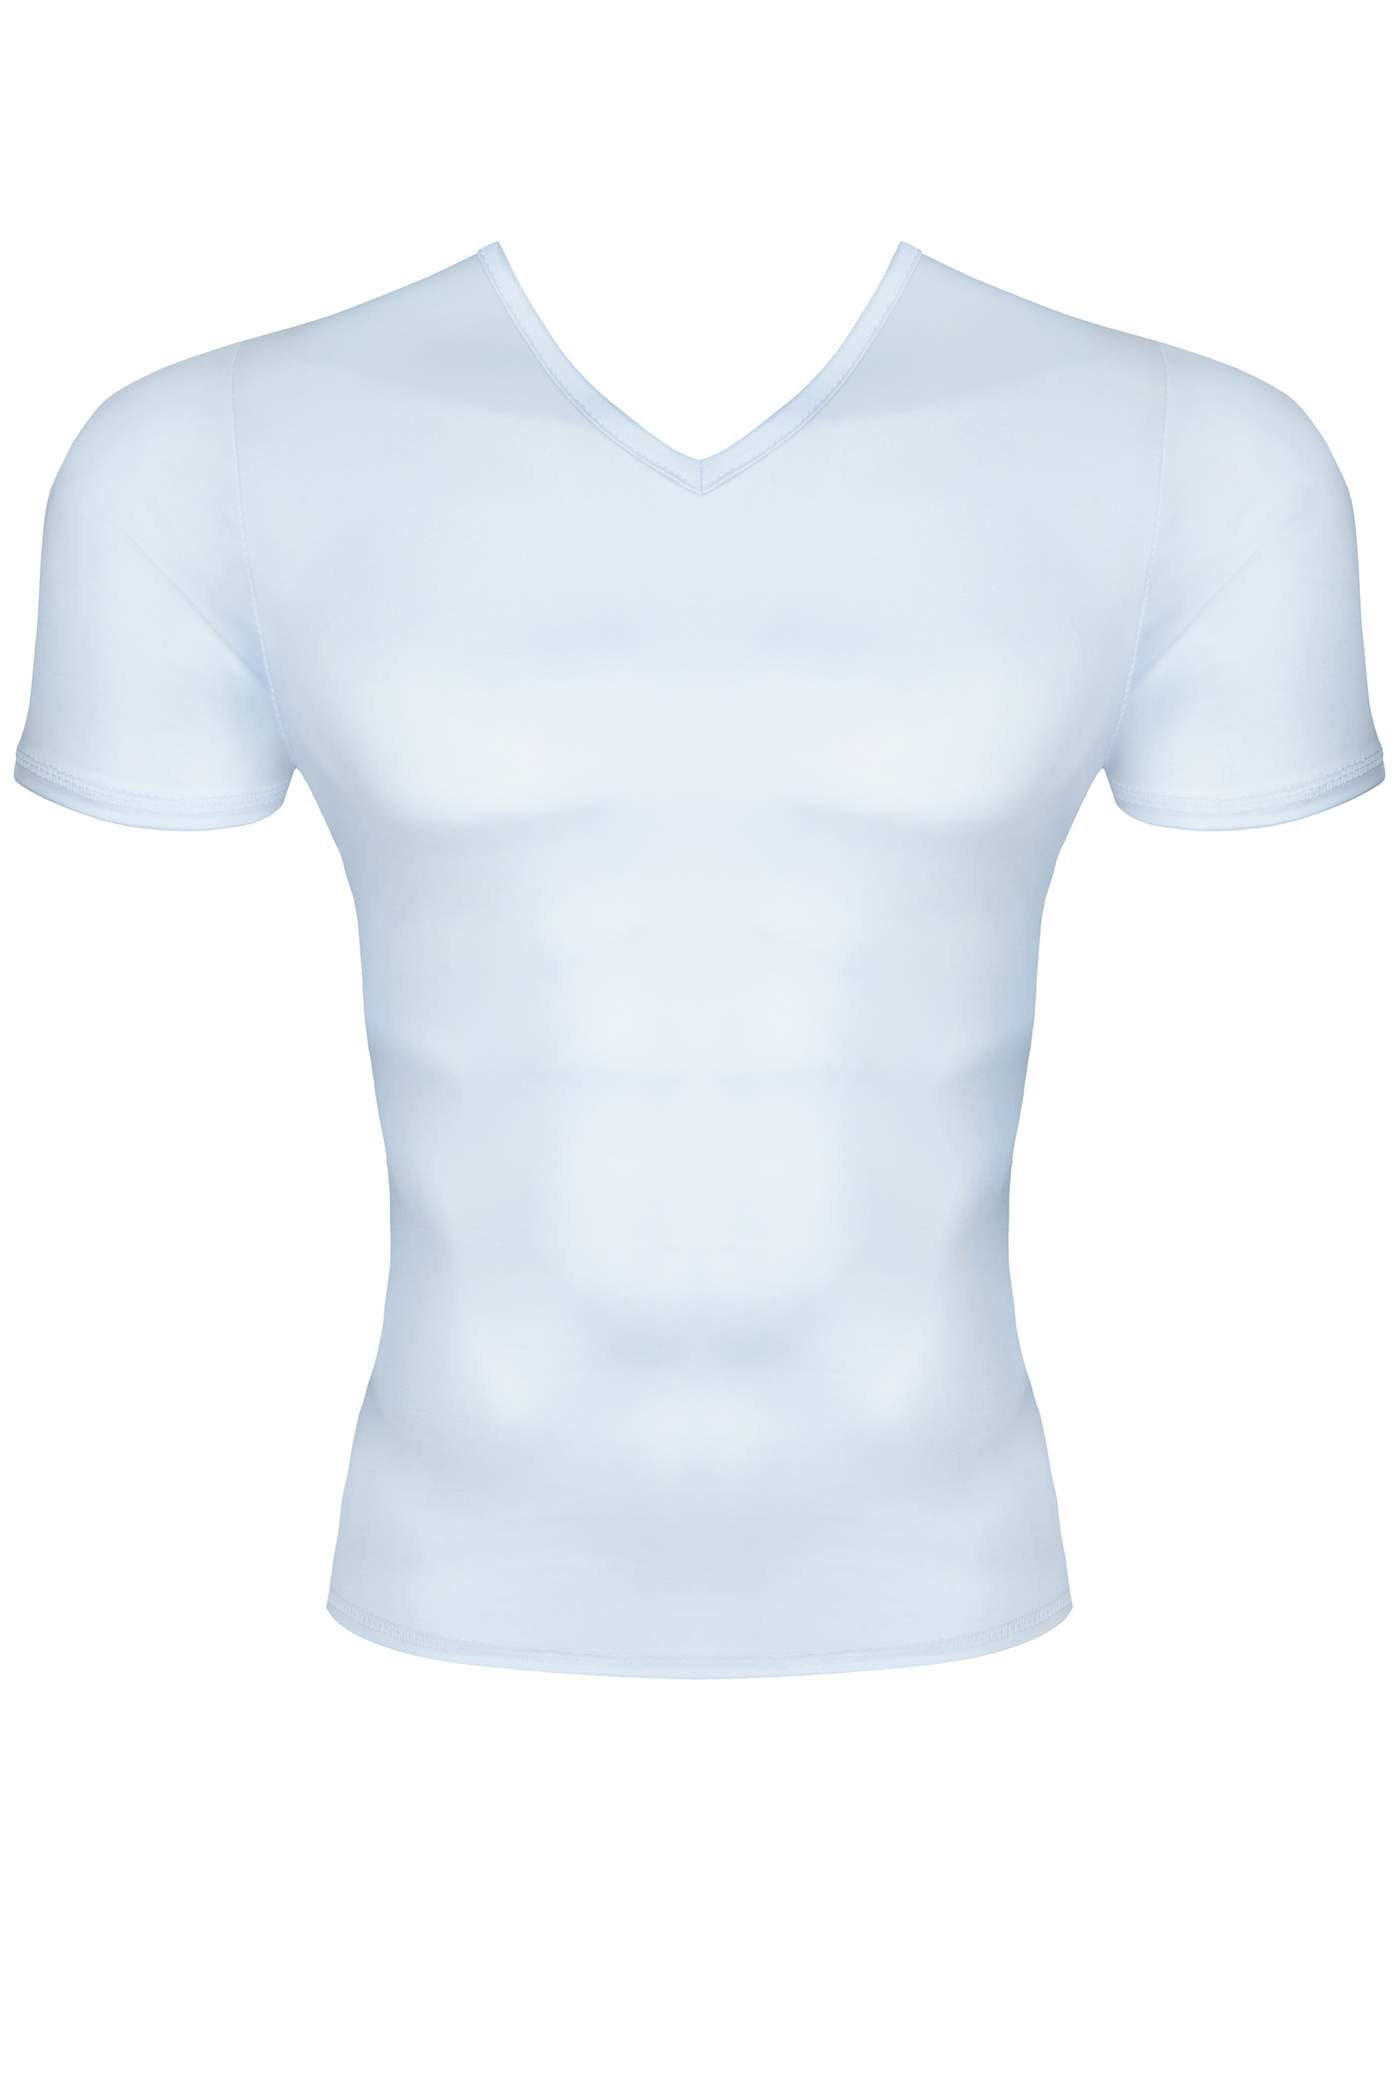 Męska koszulka z wetlooka w białym kolorze wycięta w serek